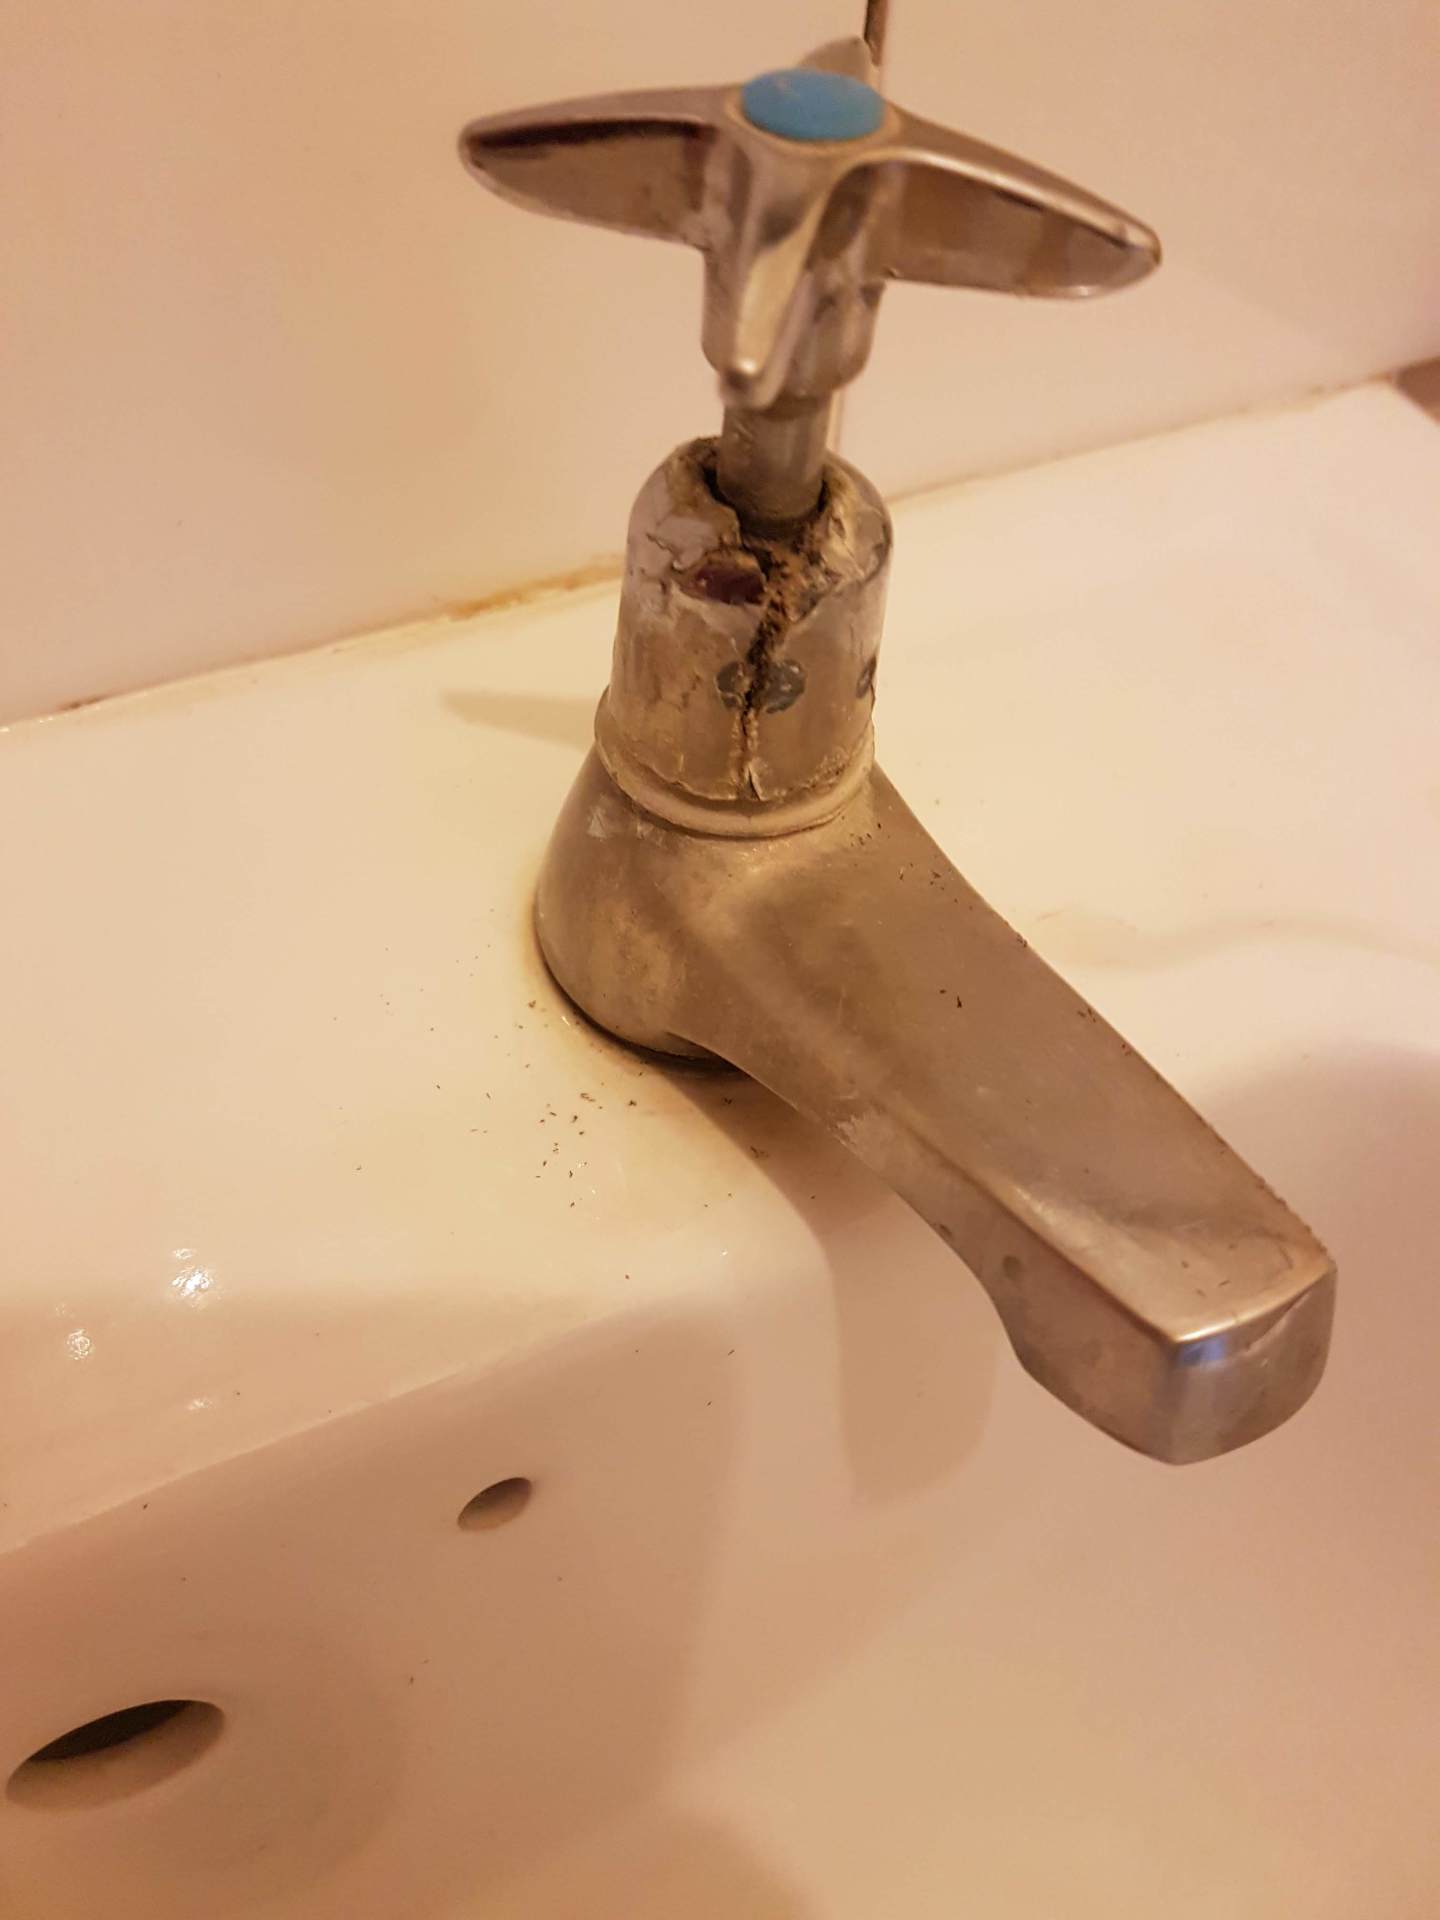 apt-bathroom-sink-tap